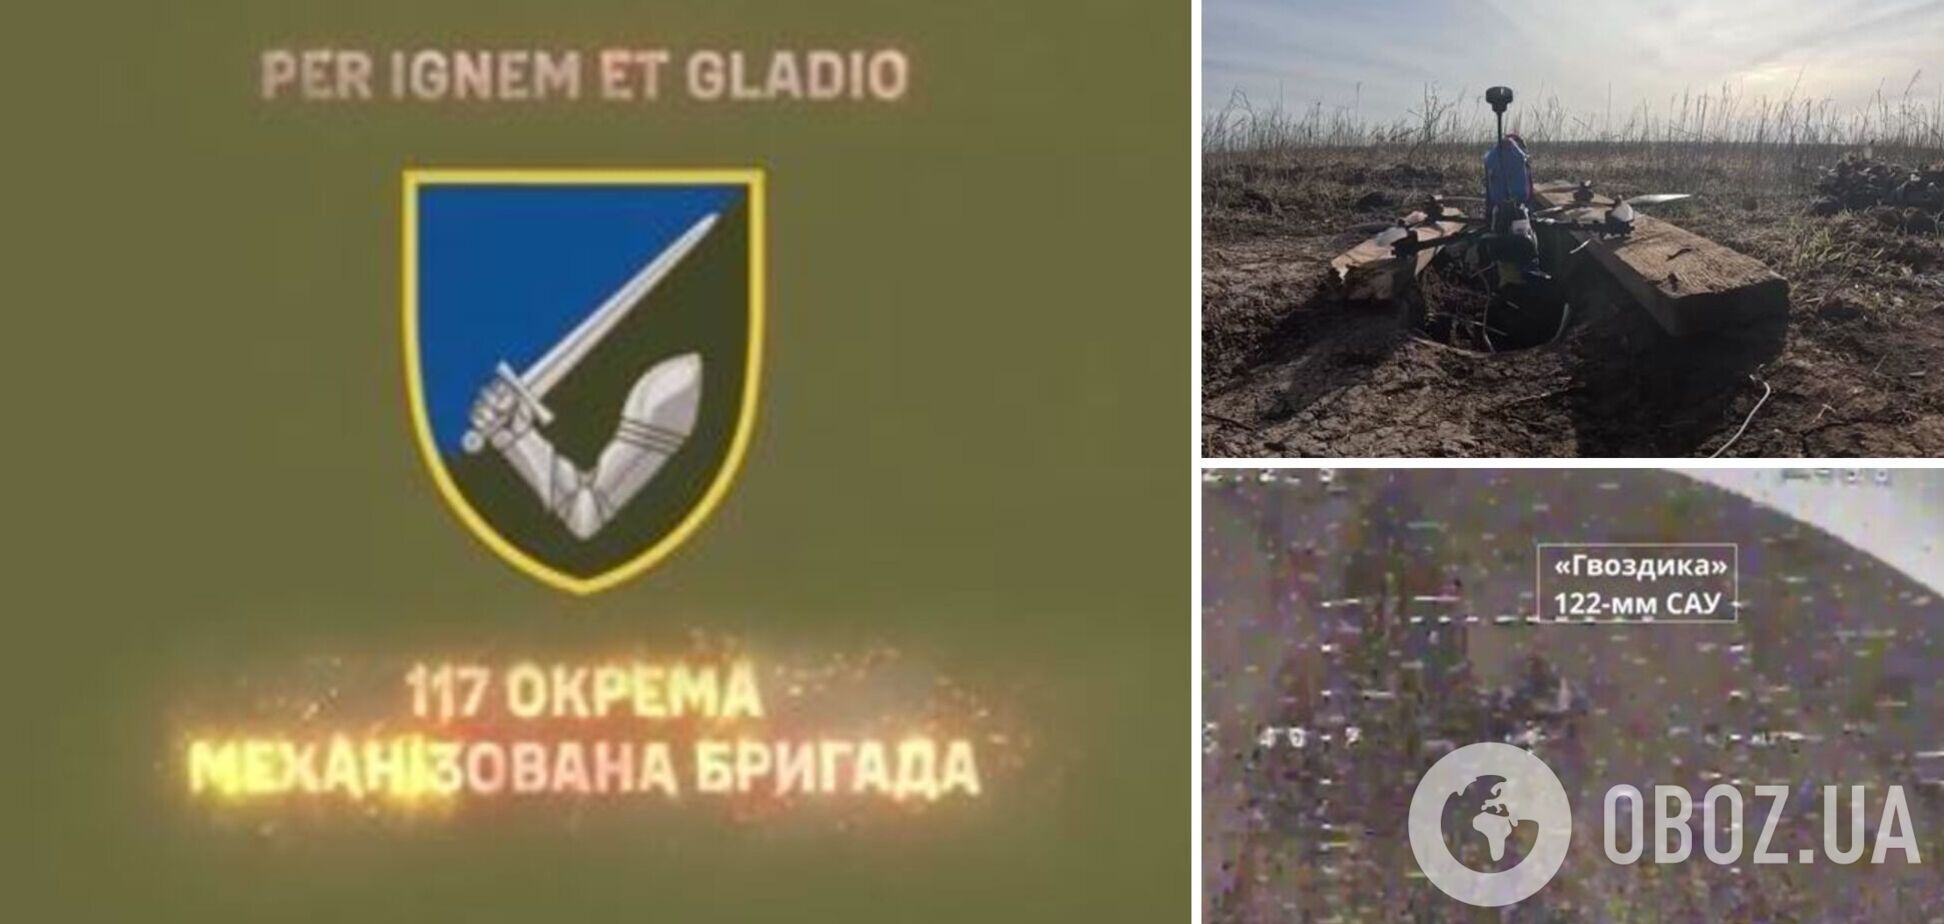 Работают FPV-дроны: в ВСУ показали уничтожение российских САУ 'Гвоздика' и БМД-4. Видео